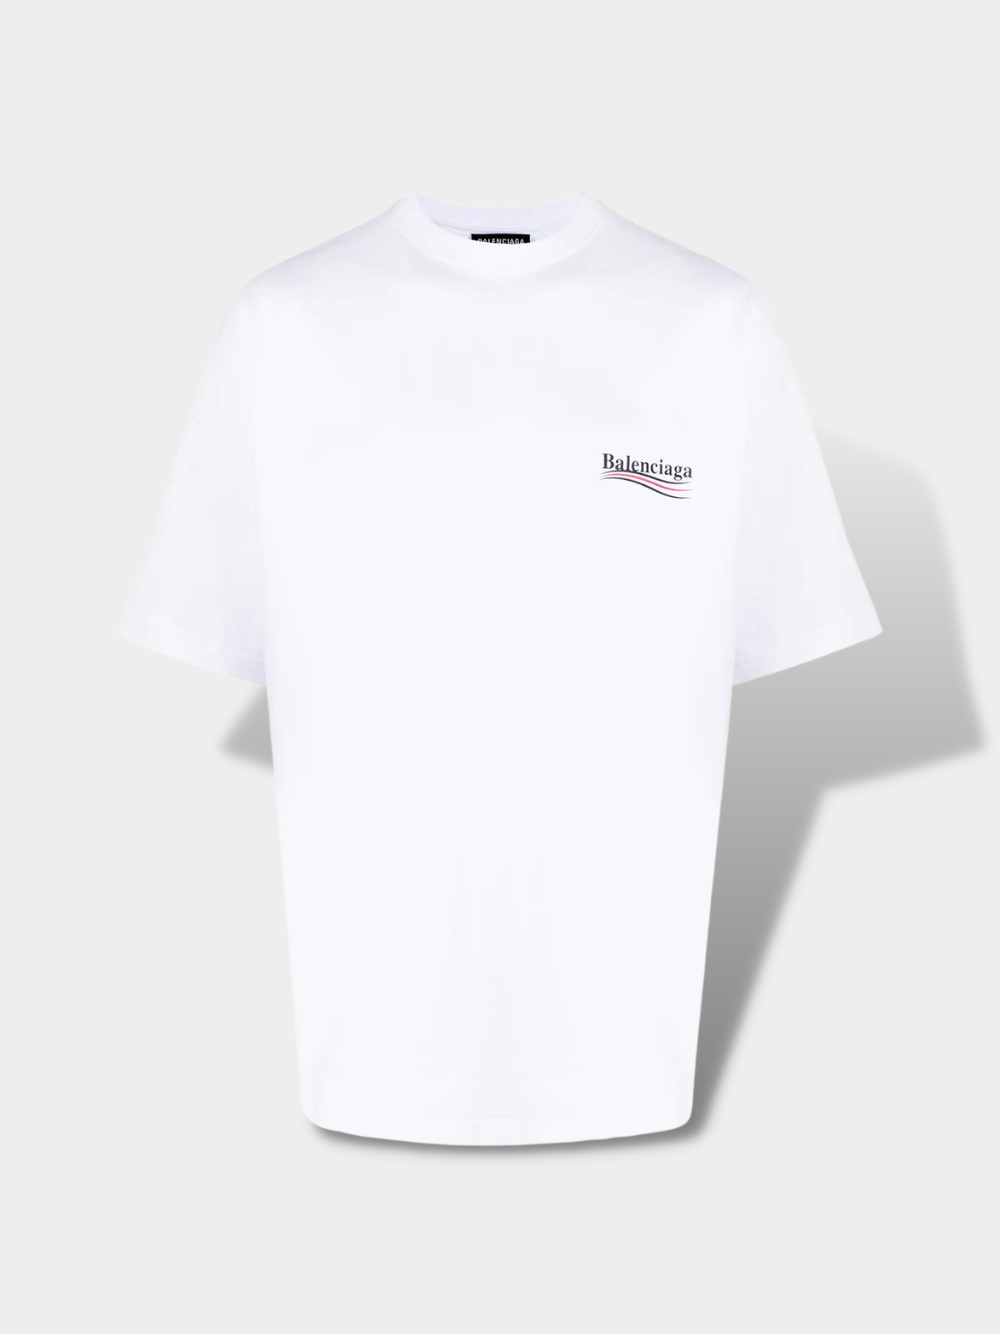 בלנסיאגה טי שירט צבע לבן embroidered logo T-shirt